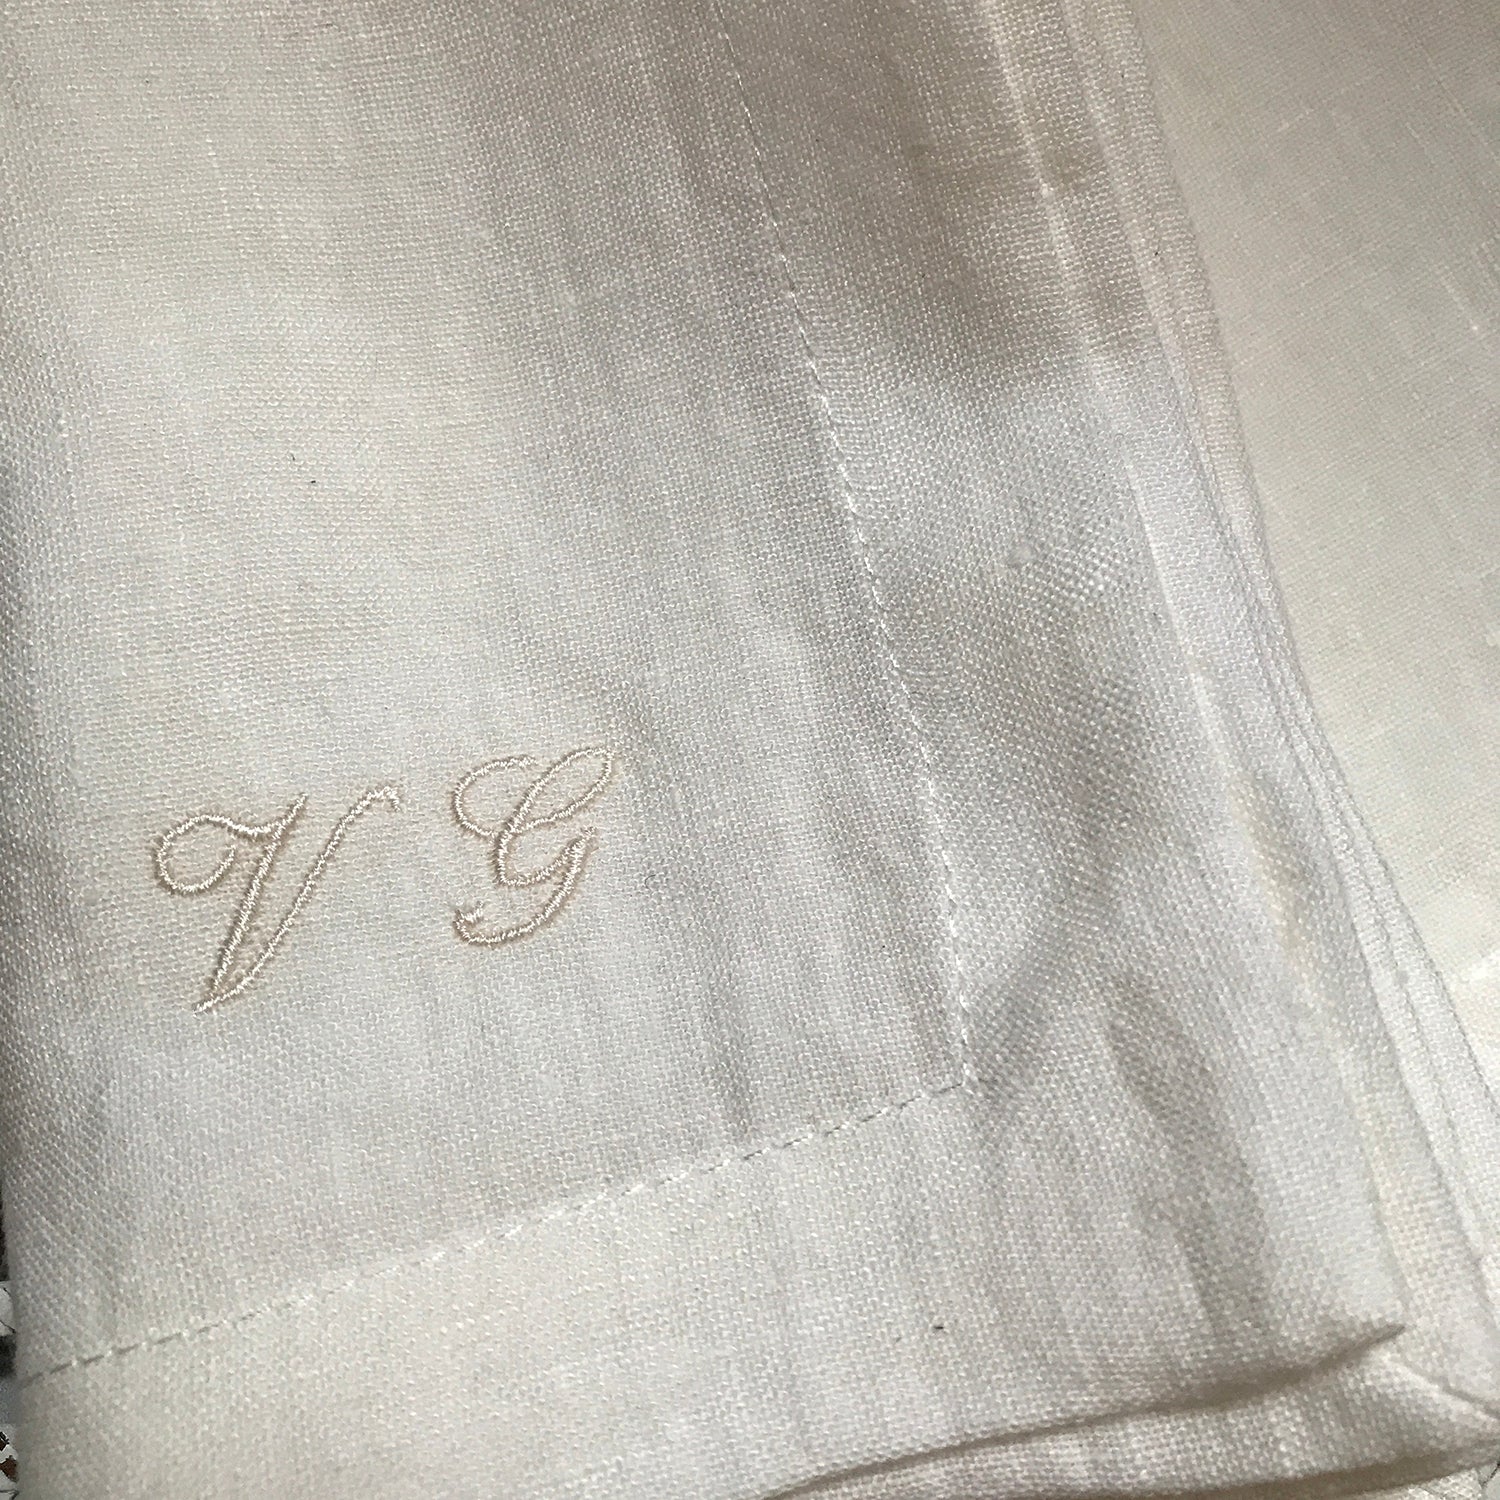 Bordado en servilletas de lino blanco.